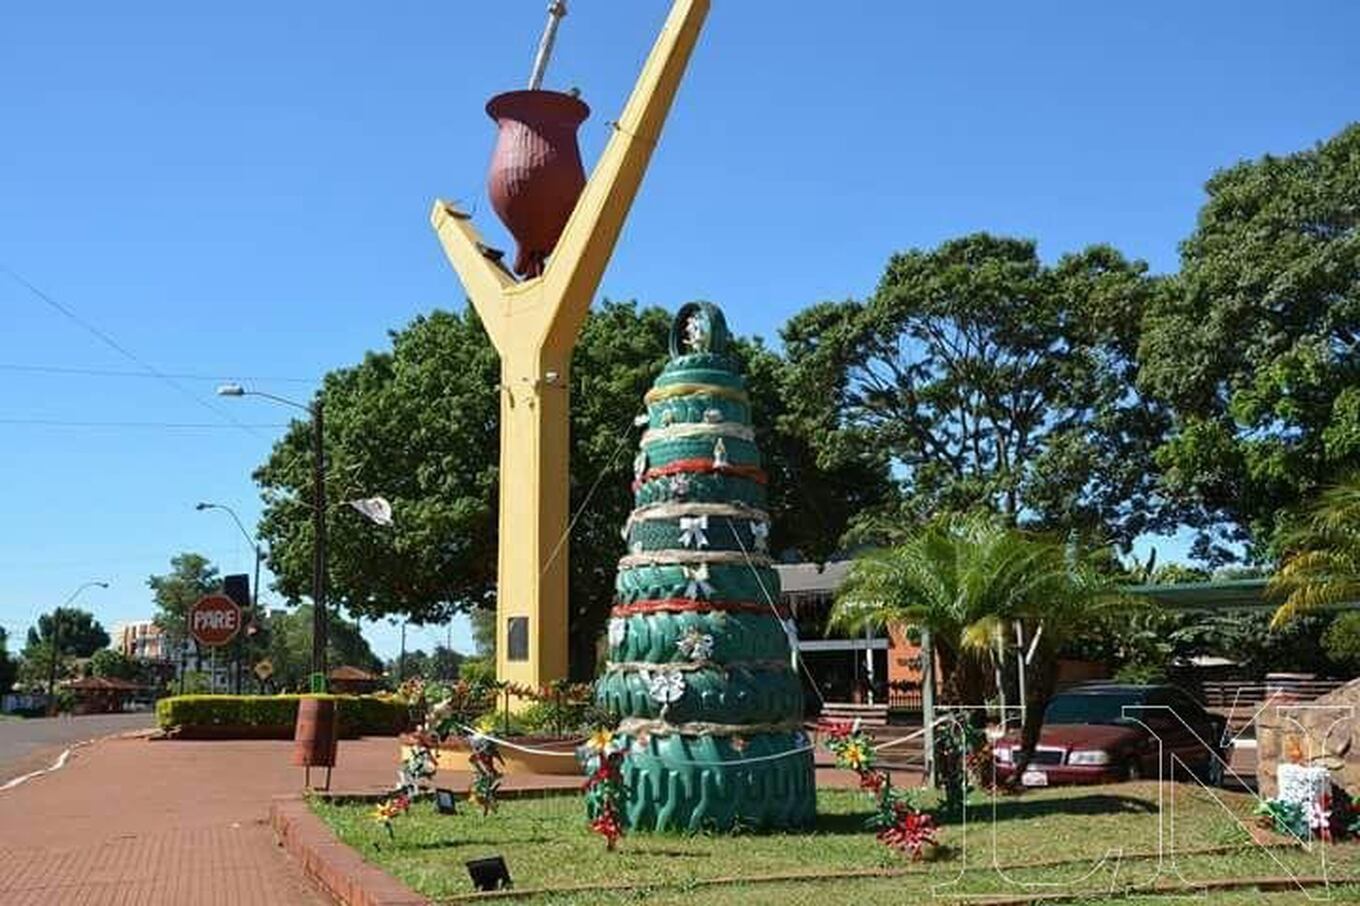 Arbolitos gigantes reciben a los visitantes a la entrada de la ciudad.